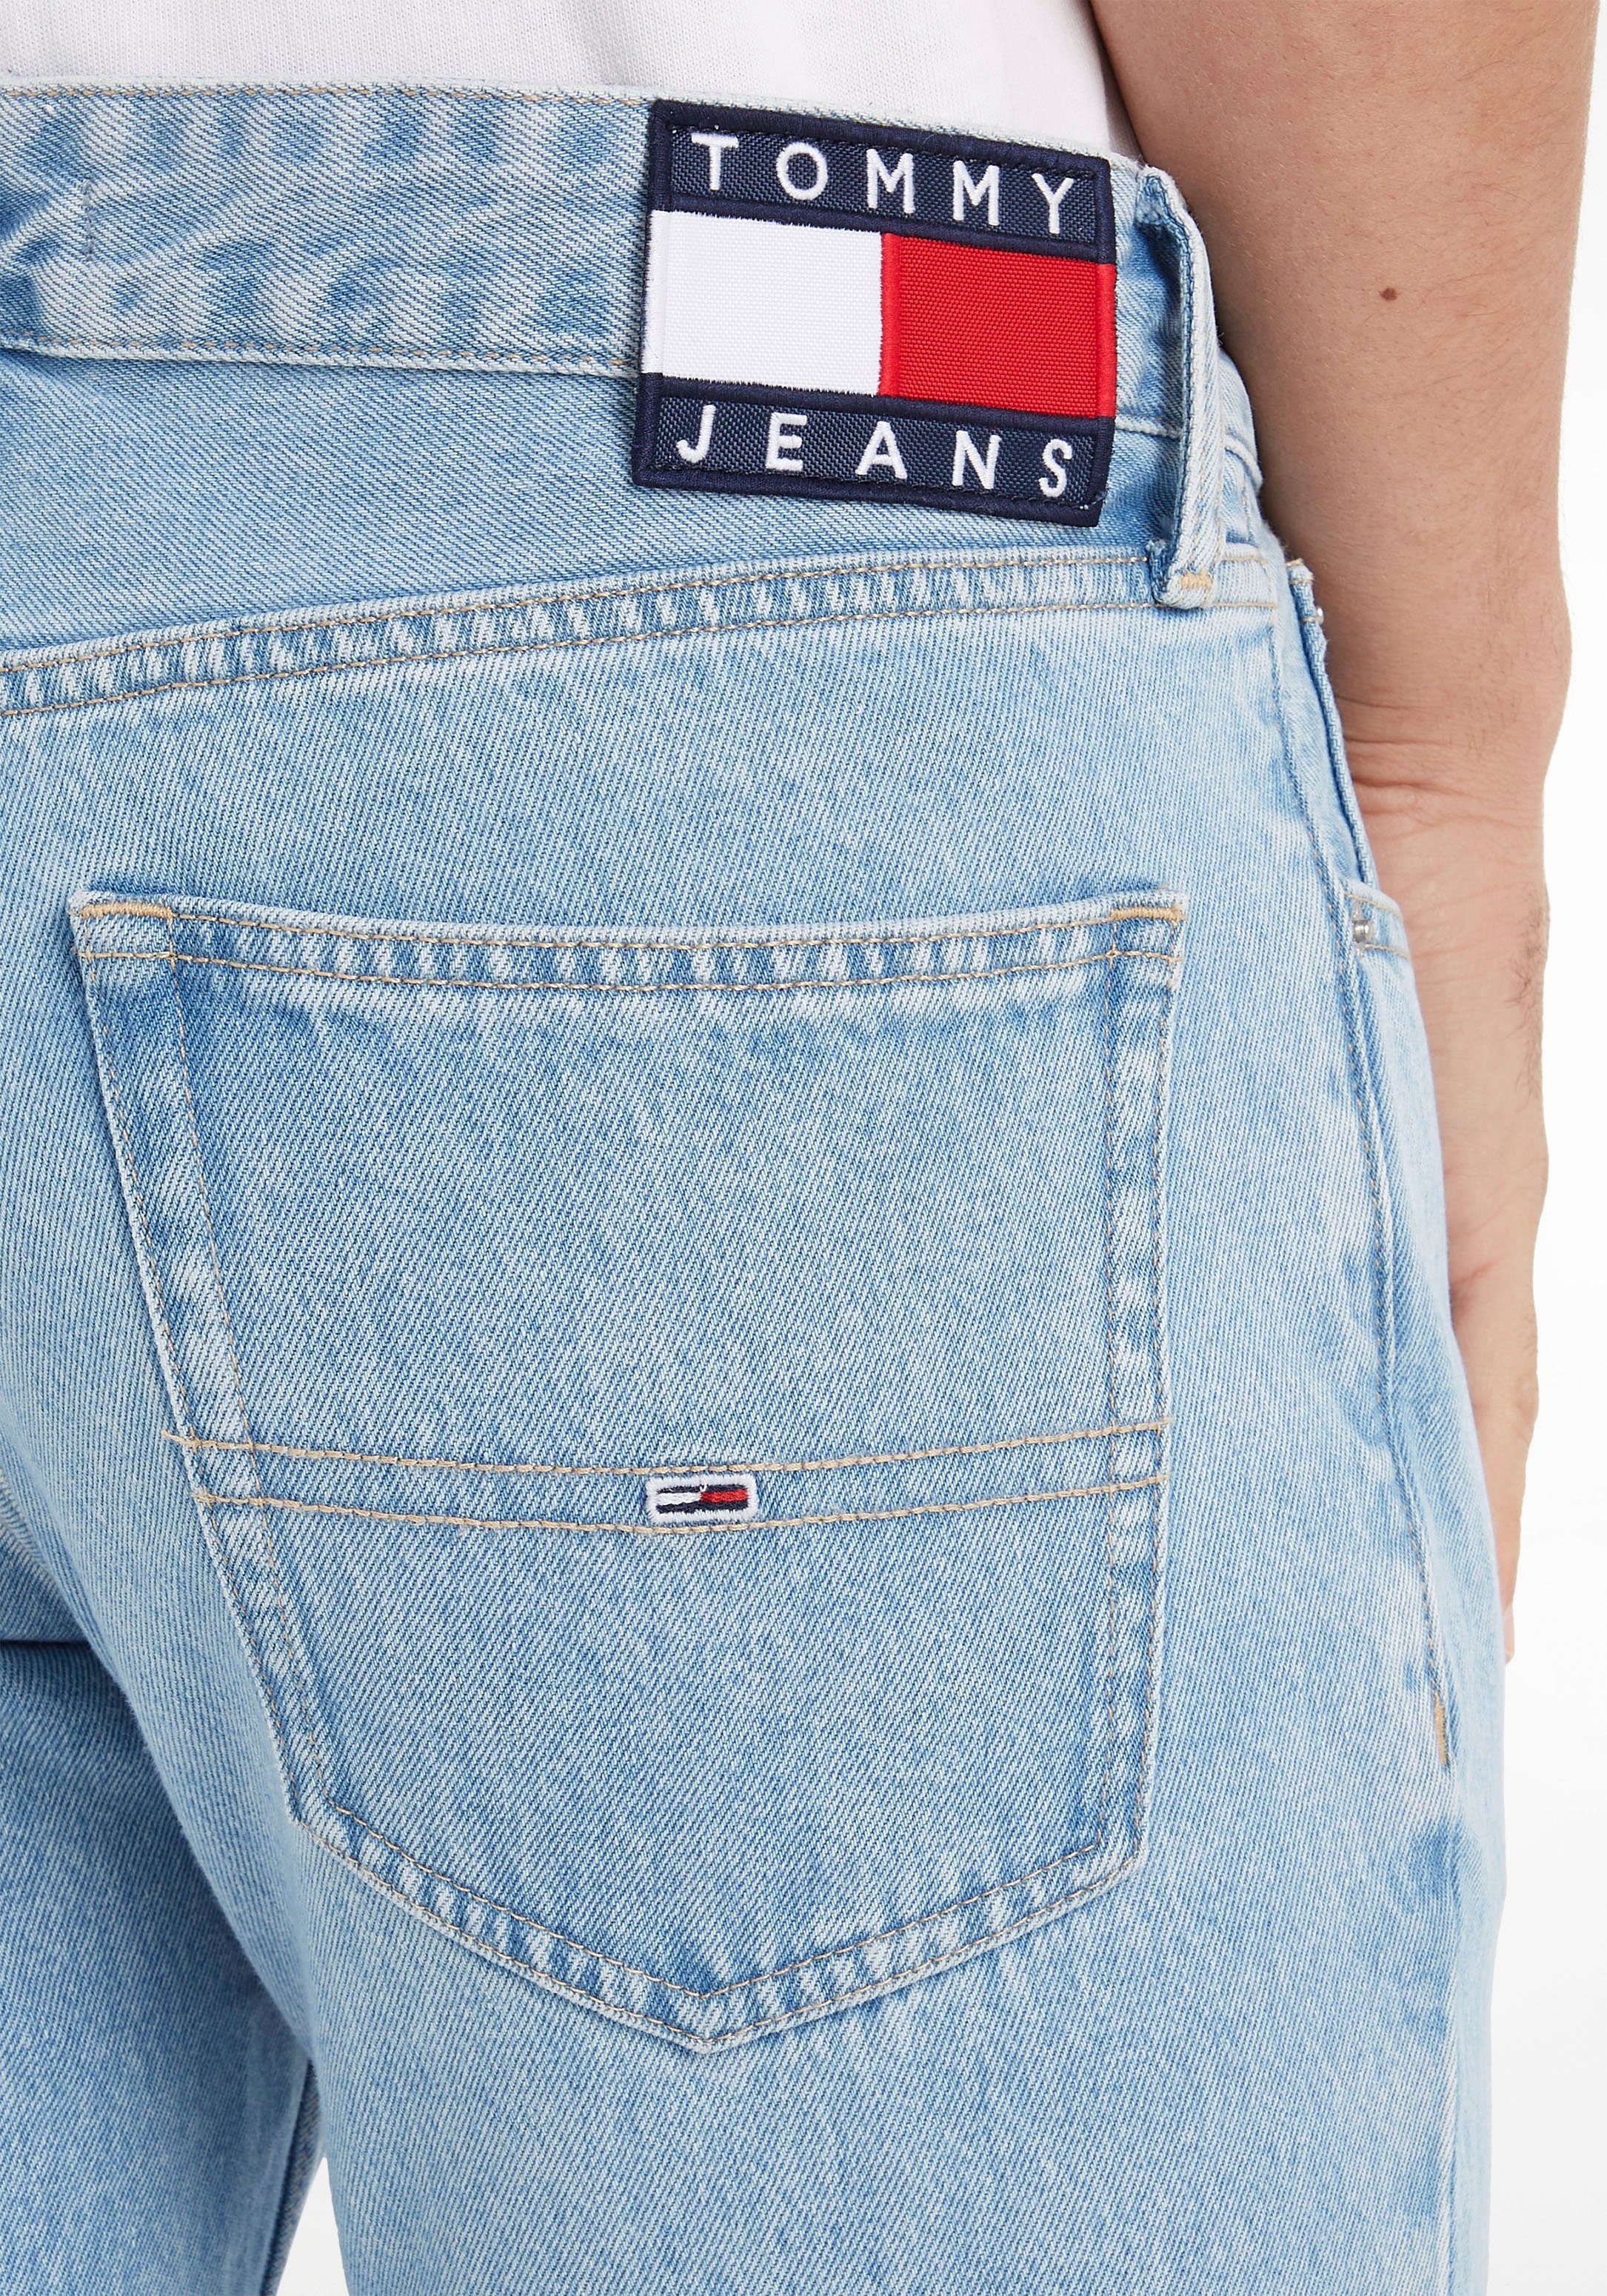 SLIM Tommy Jeans BG4015 SCANTON im Slim-fit-Jeans 5-Pocket-Stil